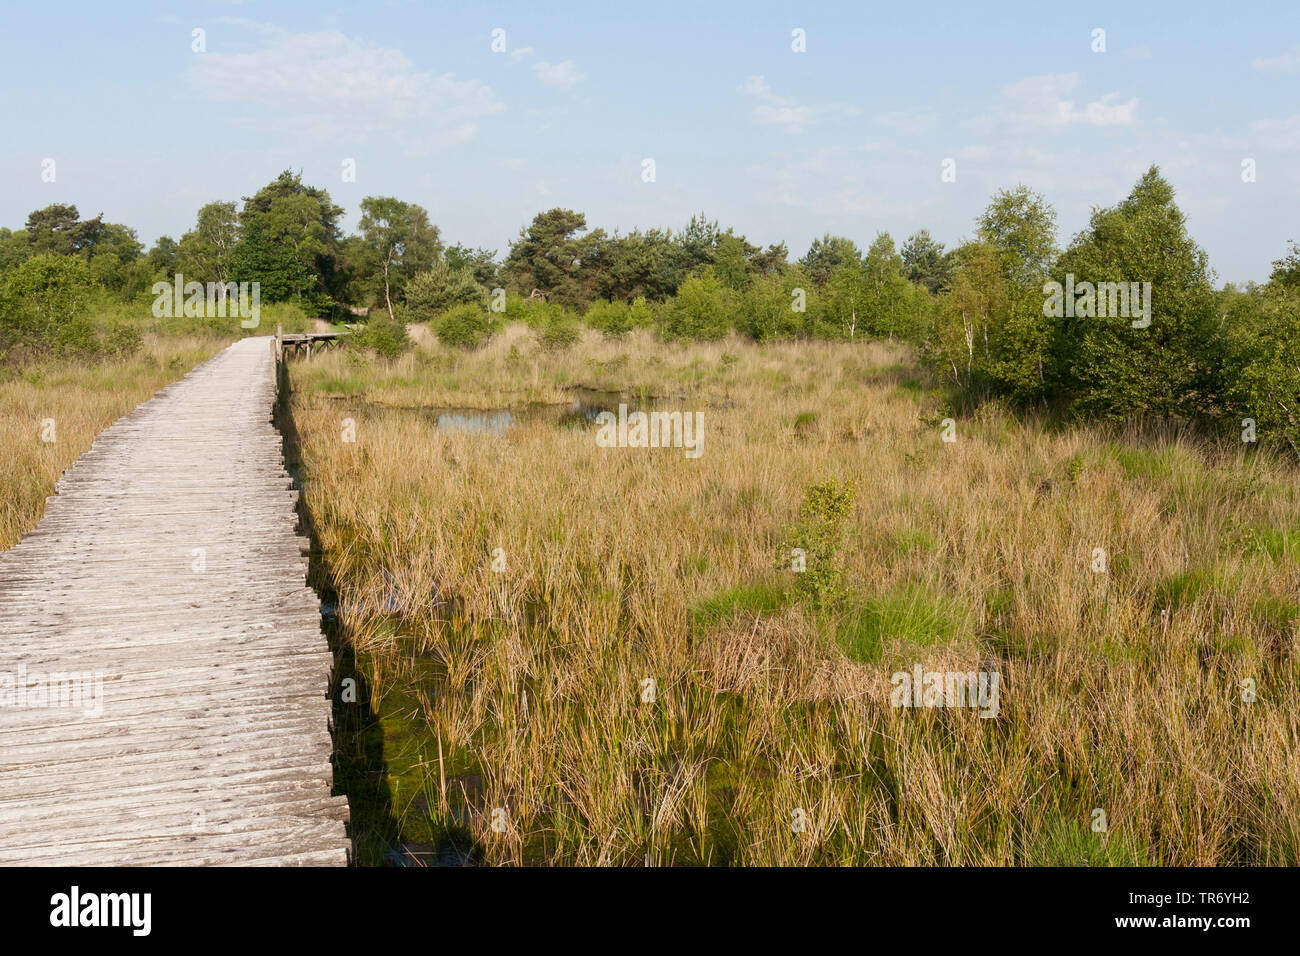 Paysage dans le parc national De Groote Peel, arraisonné, sentier, Pays-Bas, Noord-Brabant, le parc national De Groote Peel Banque D'Images